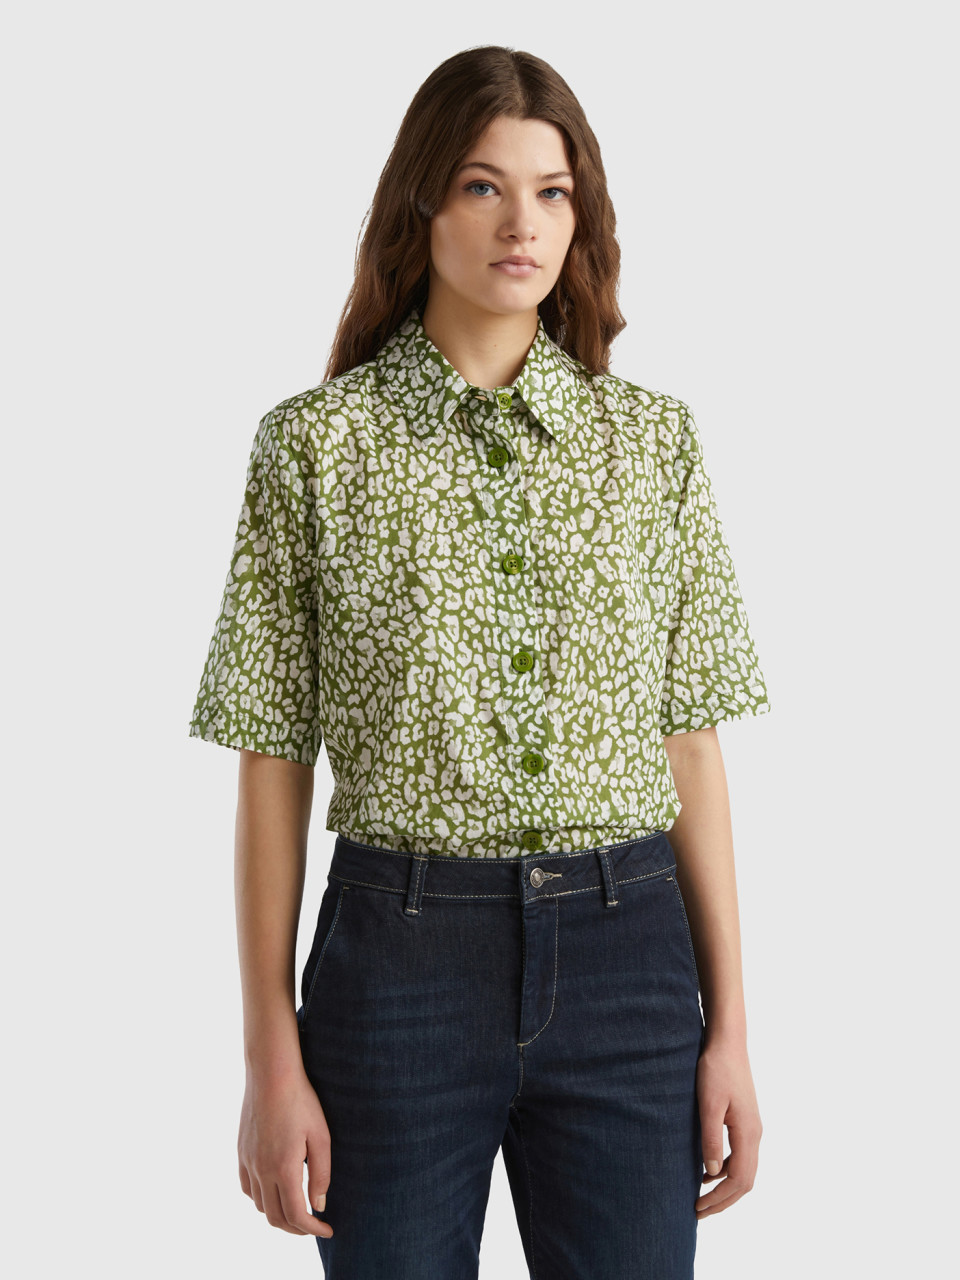 Benetton, Short Sleeve Patterned Shirt, Green, Women